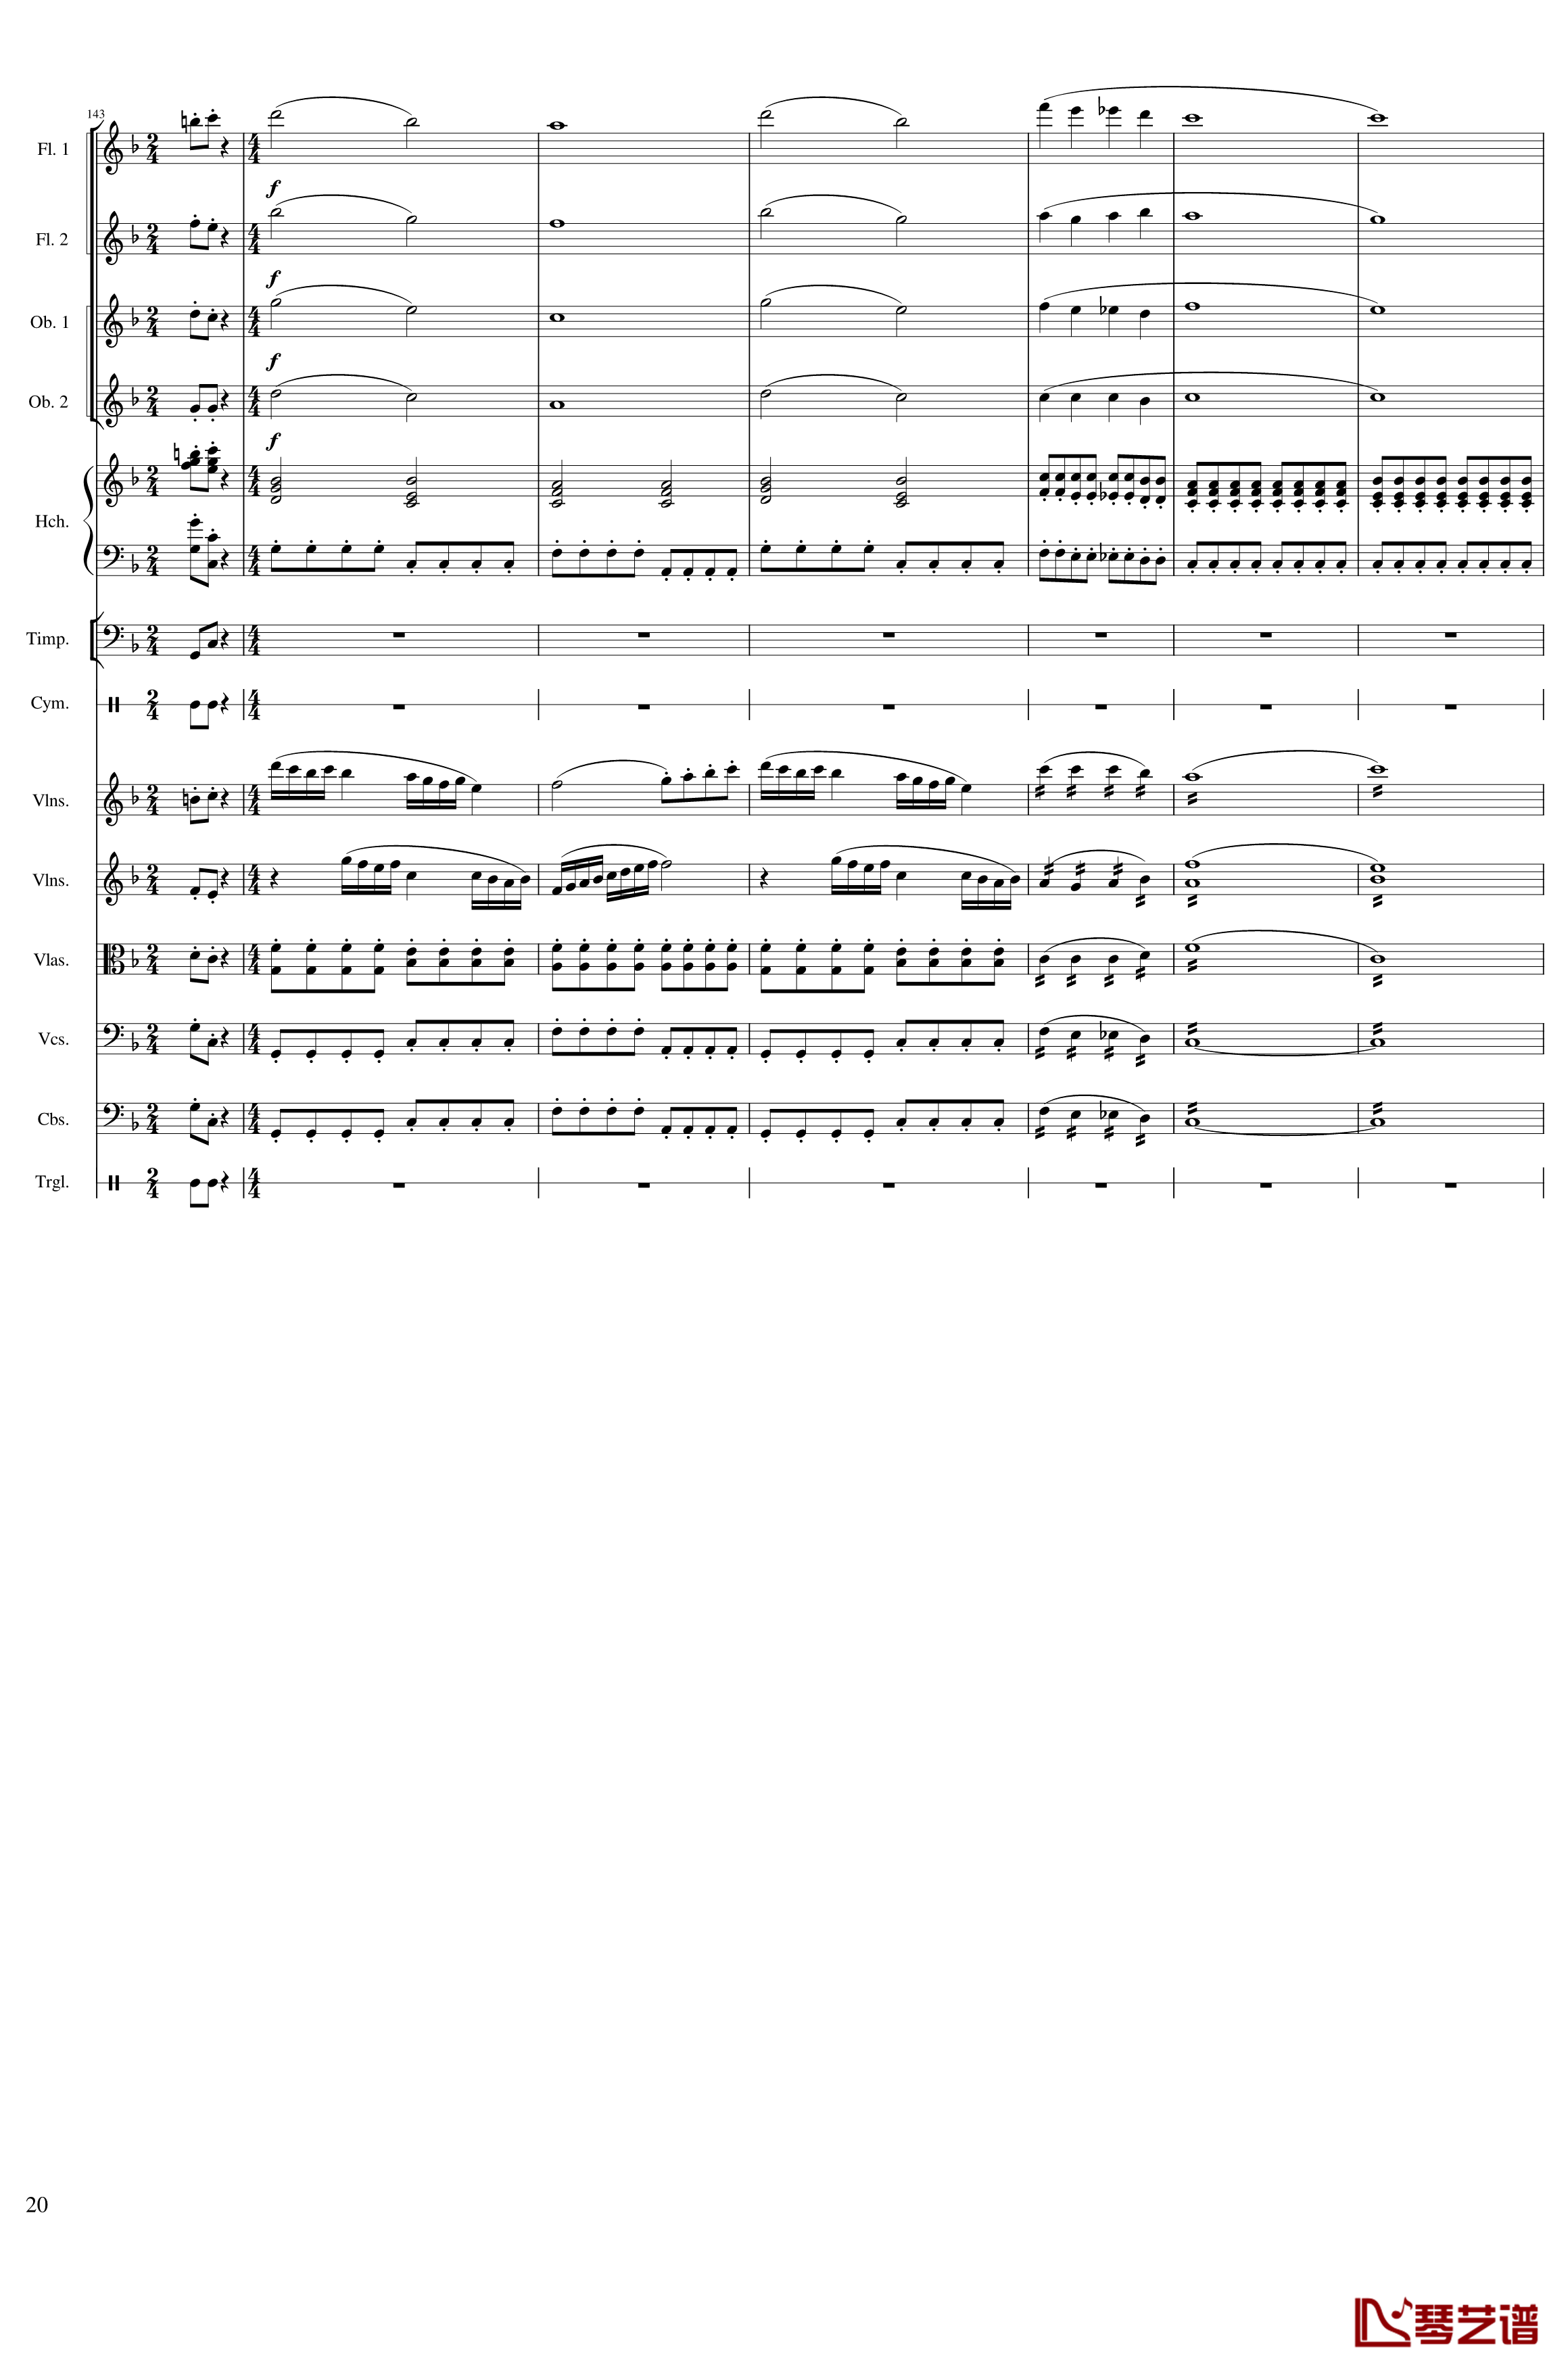 春节序曲钢琴谱-作品121-一个球20